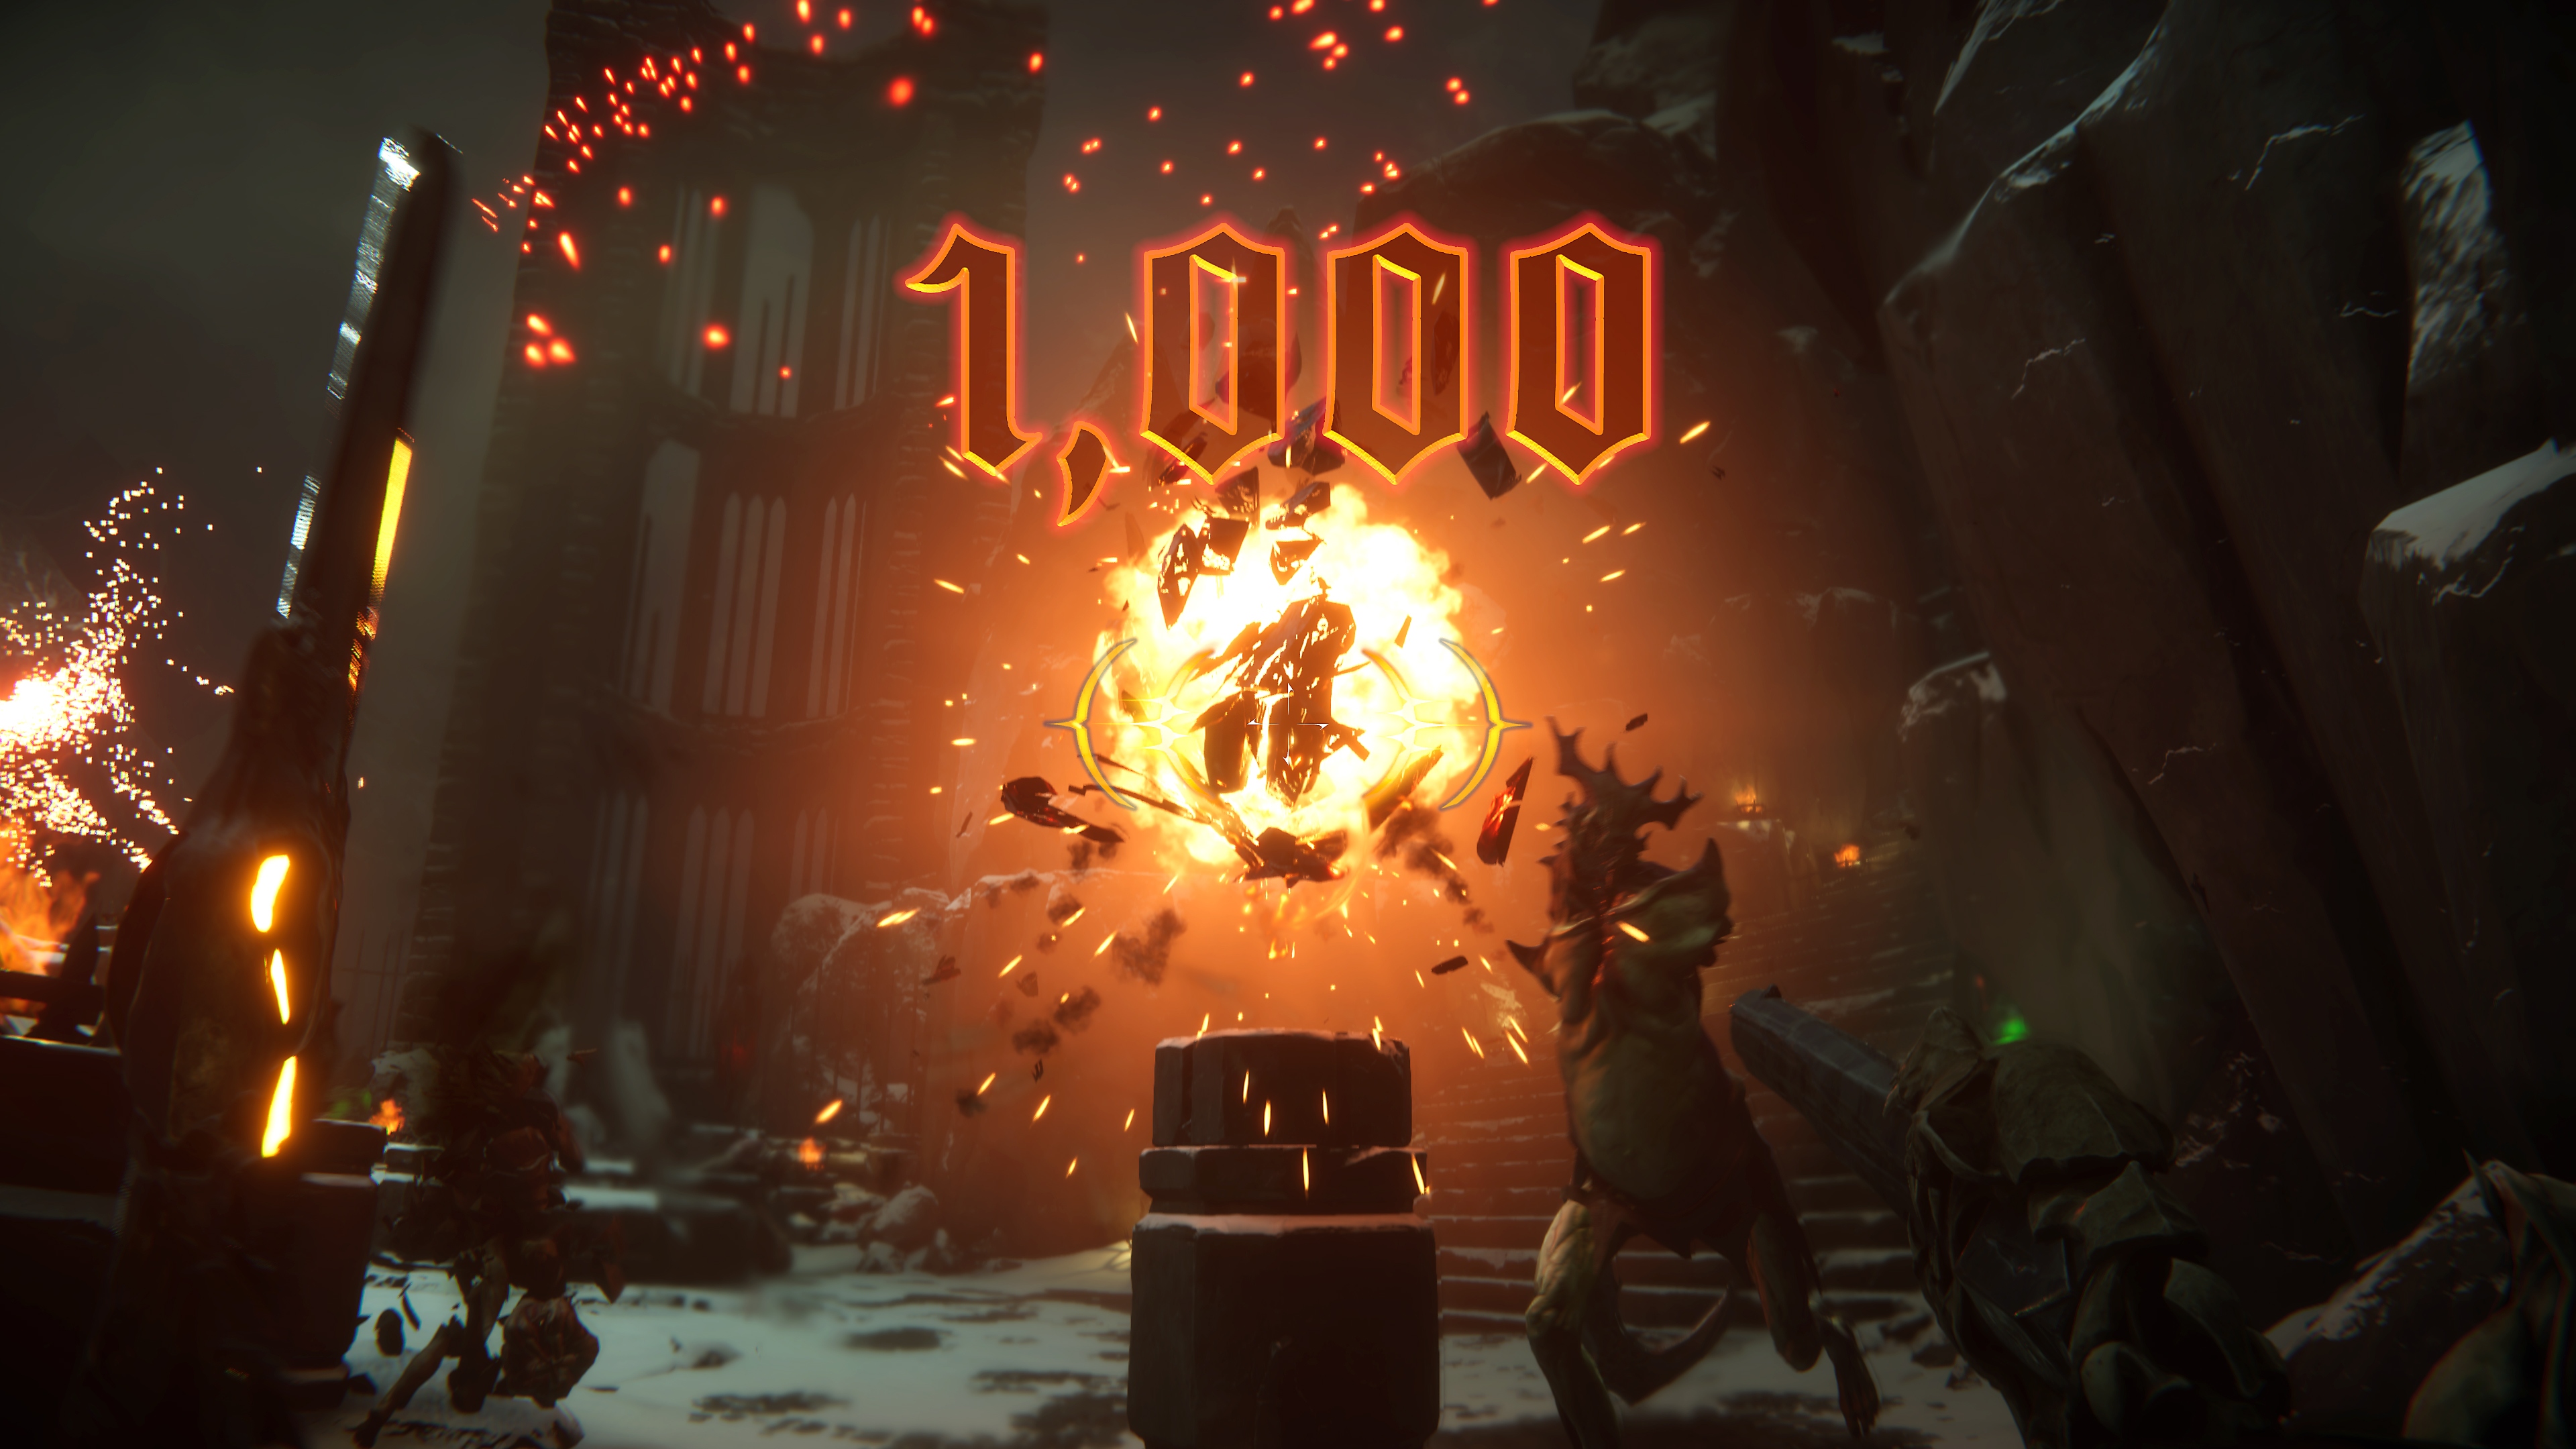 Metal Hellsinger – kuvakaappaus suuresta räjähdyksestä keskellä, ja näytöllä lukee "1 000 pistettä".